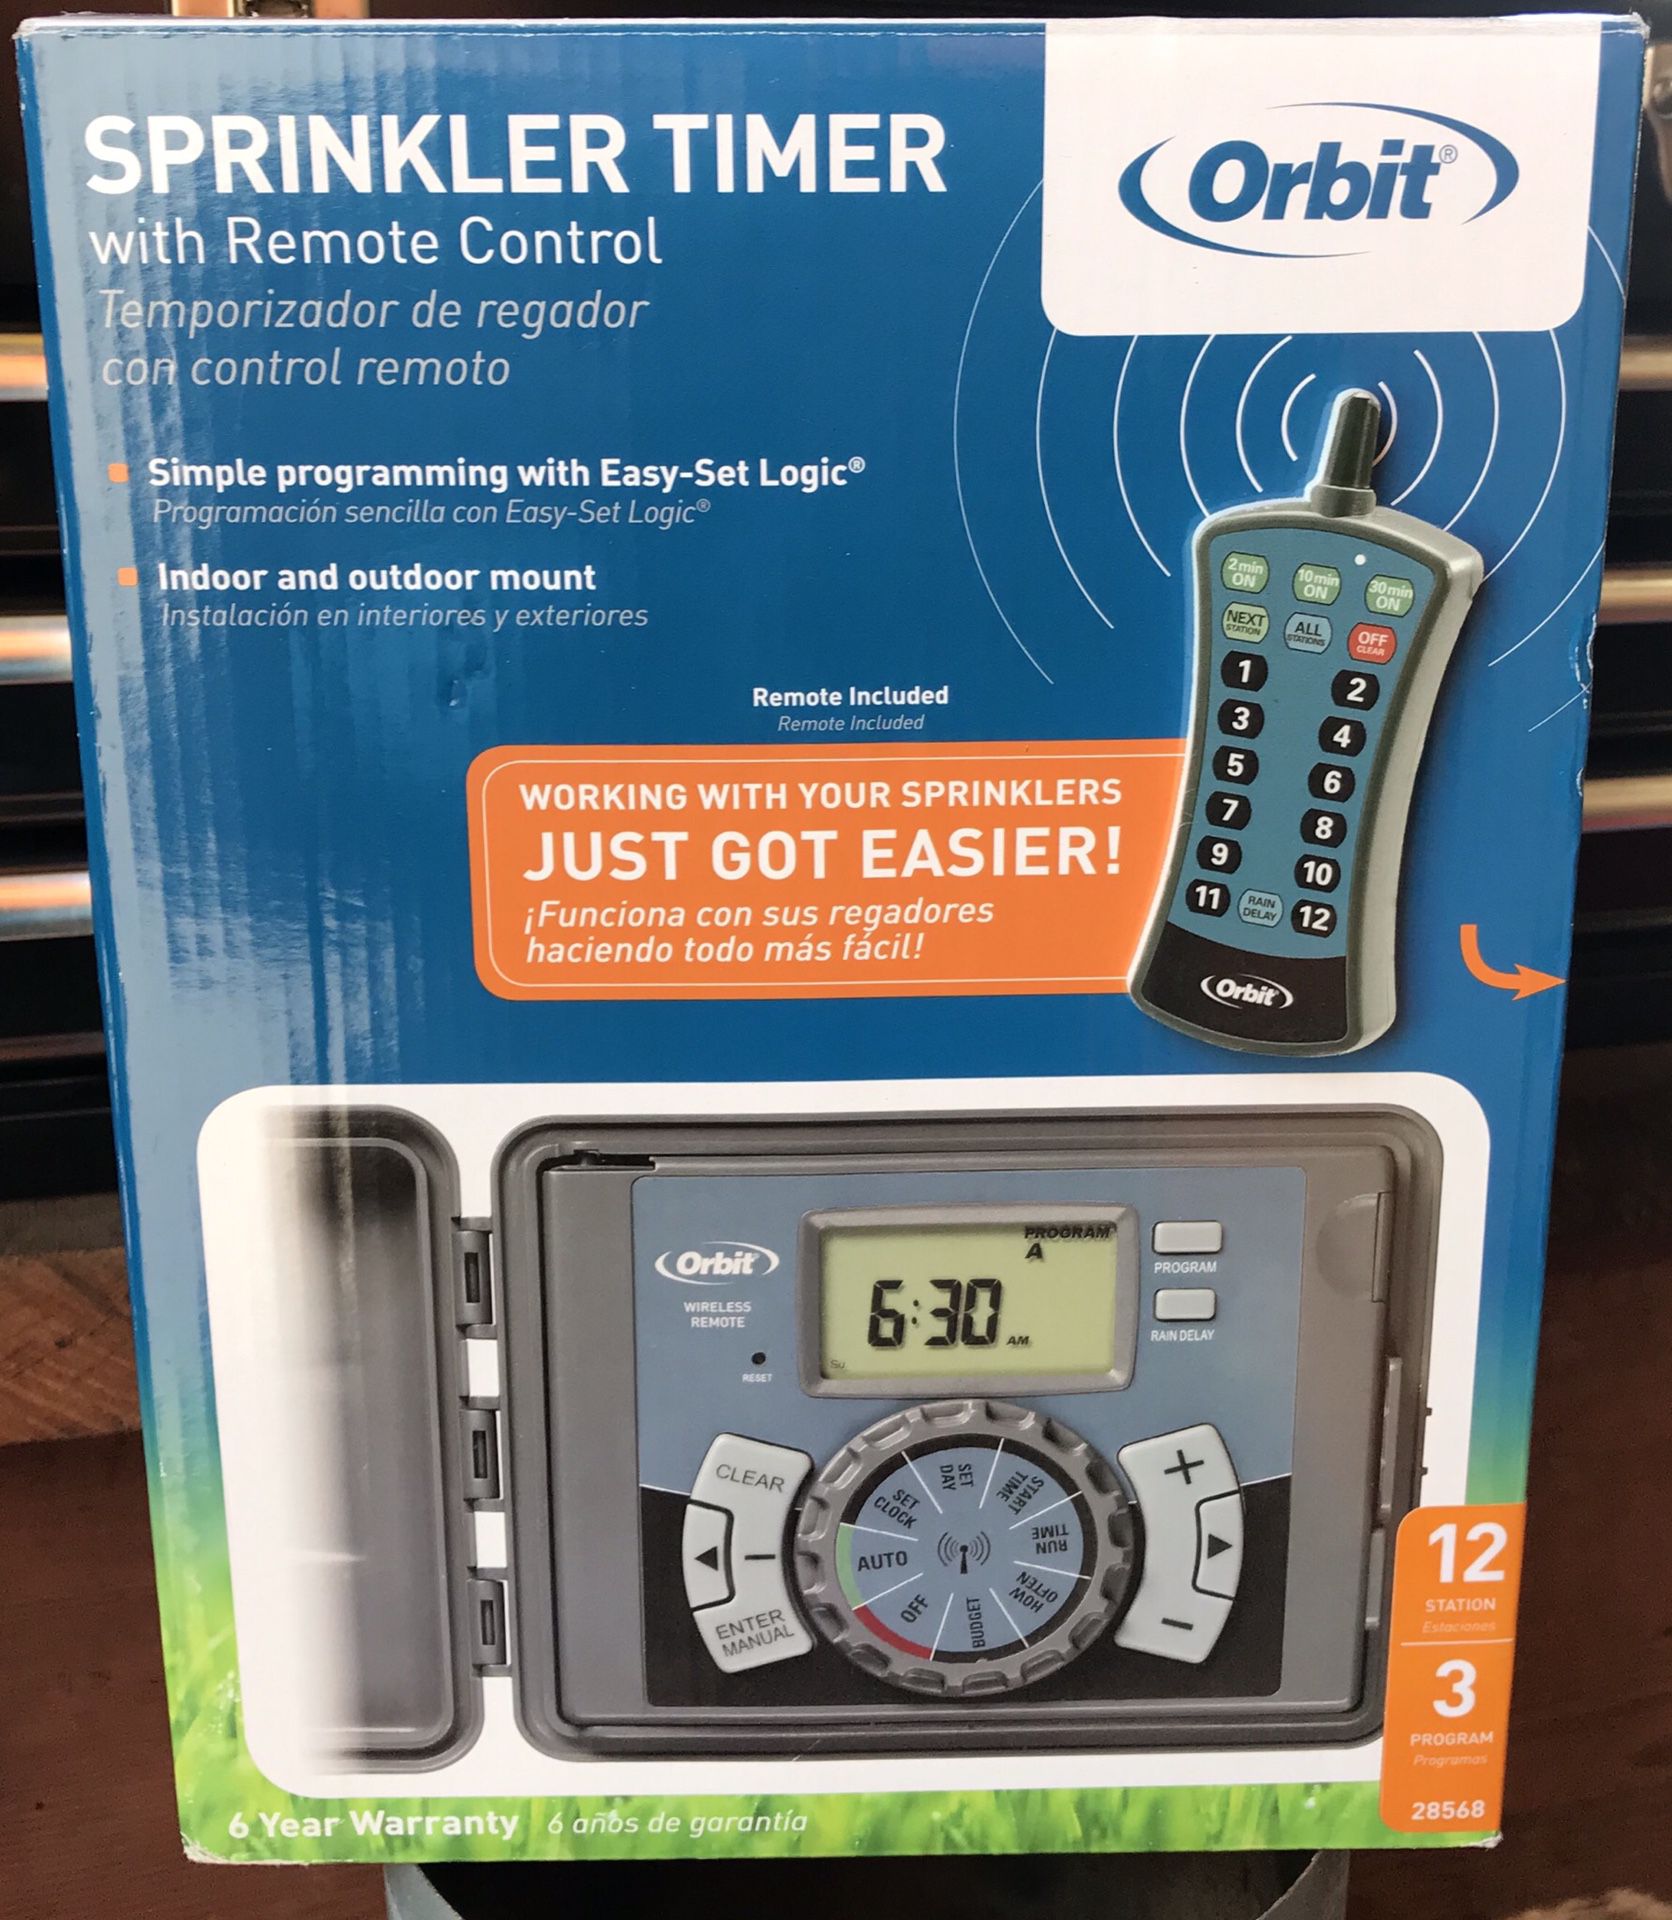 NEW Sprinkler timer 12 Zone by Orbit